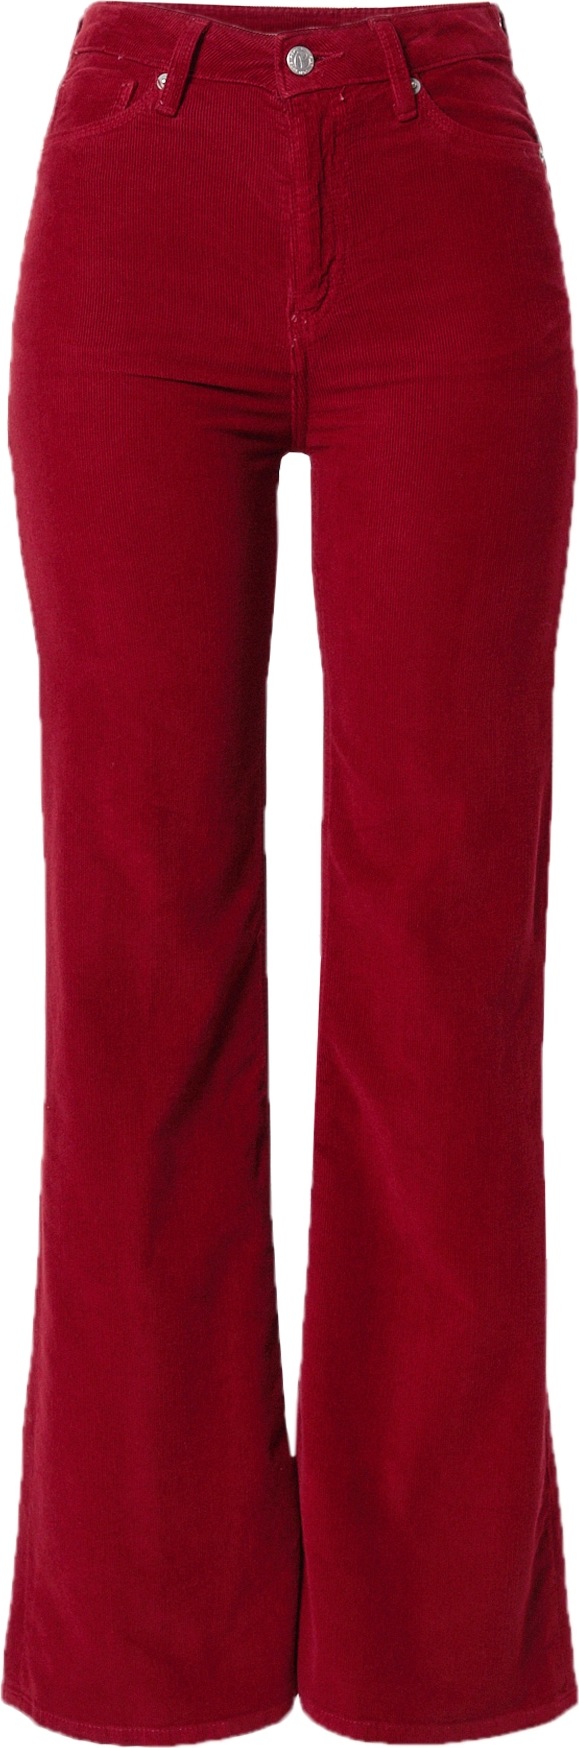 Pepe Jeans Kalhoty 'Willa' karmínově červené